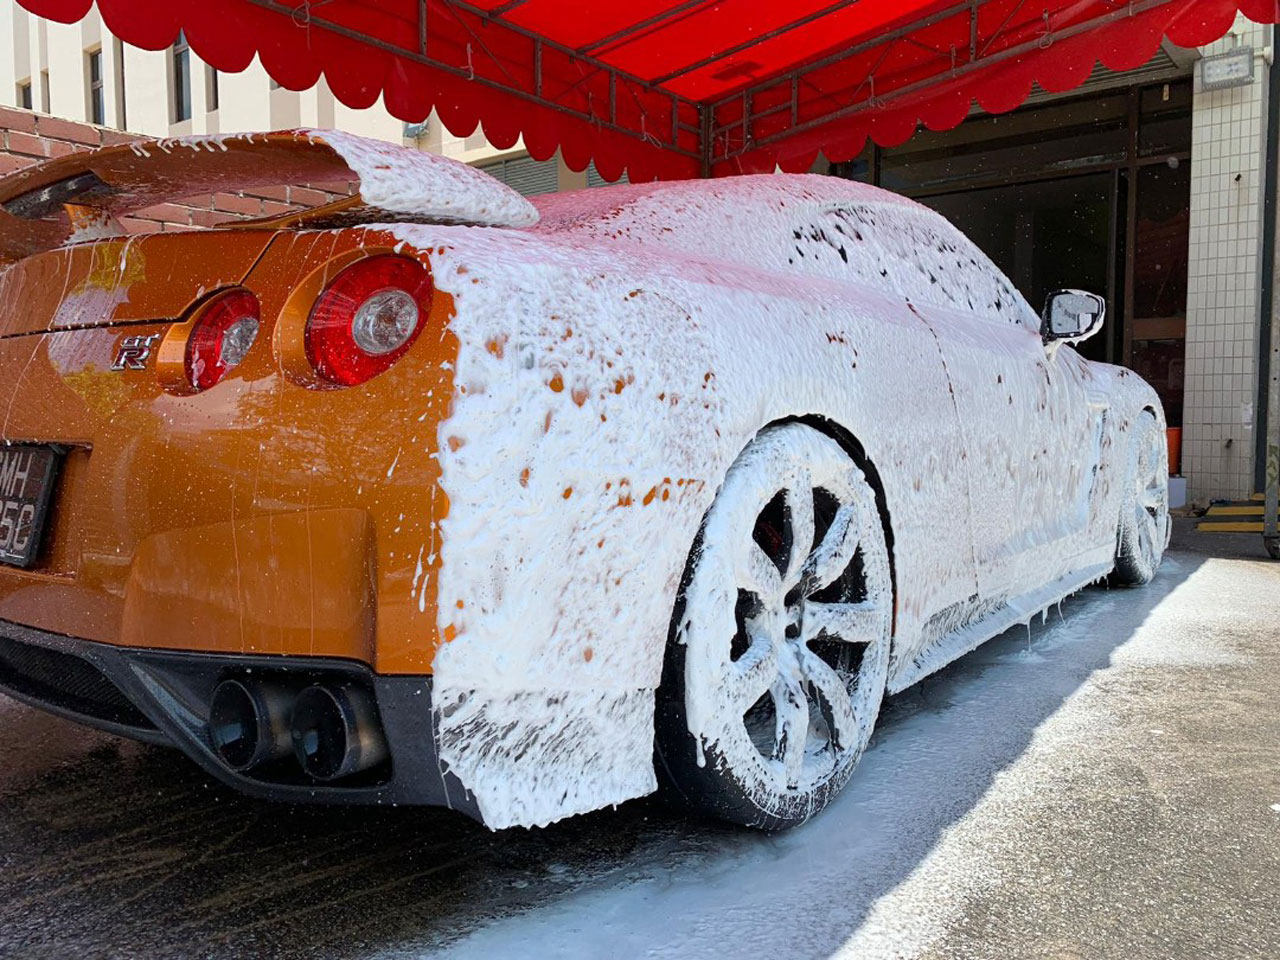 An orange car with a foam cannon car wash